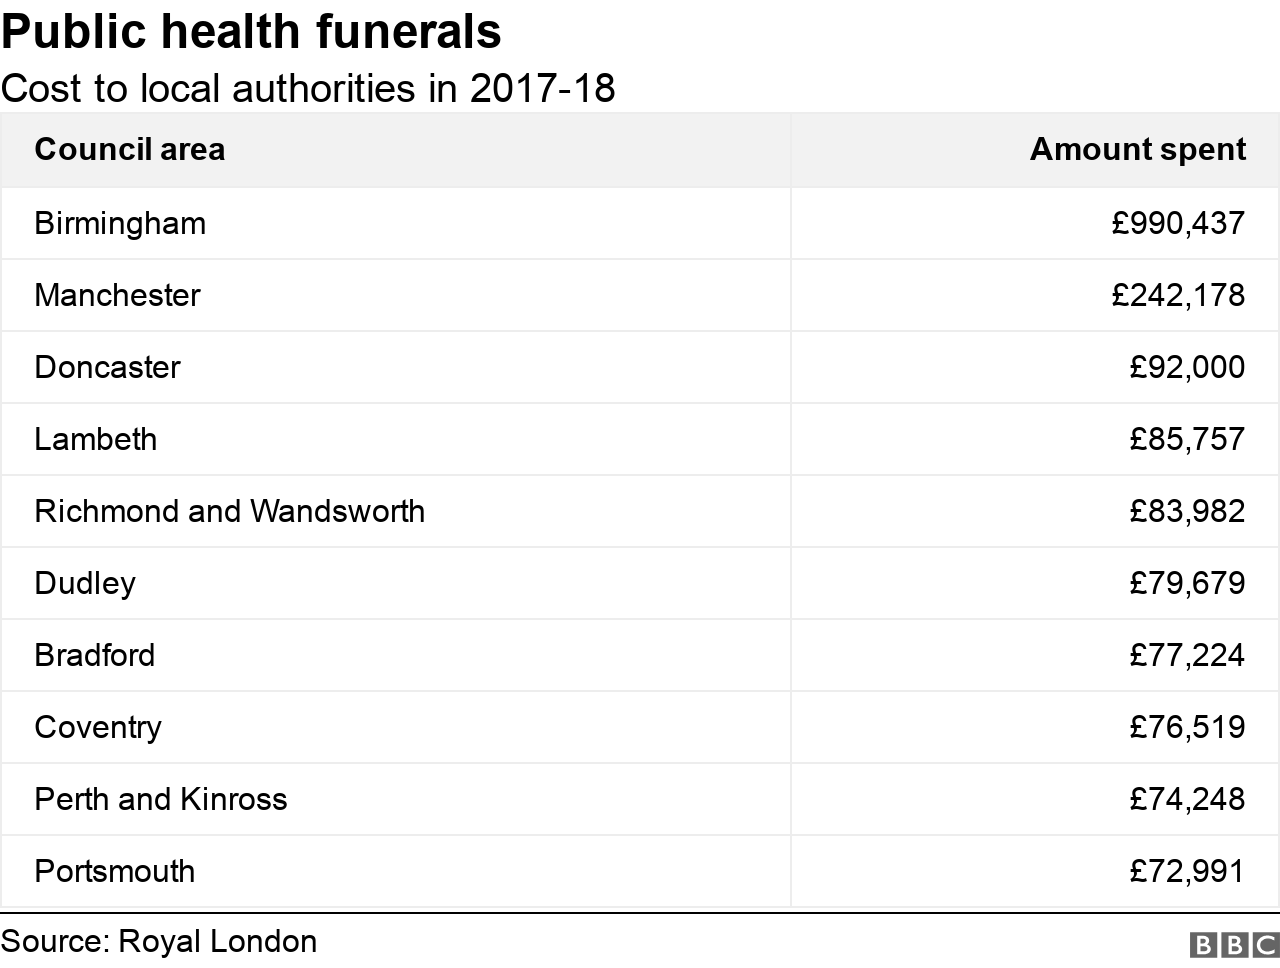 Диаграмма, показывающая стоимость похорон общественного здравоохранения советам